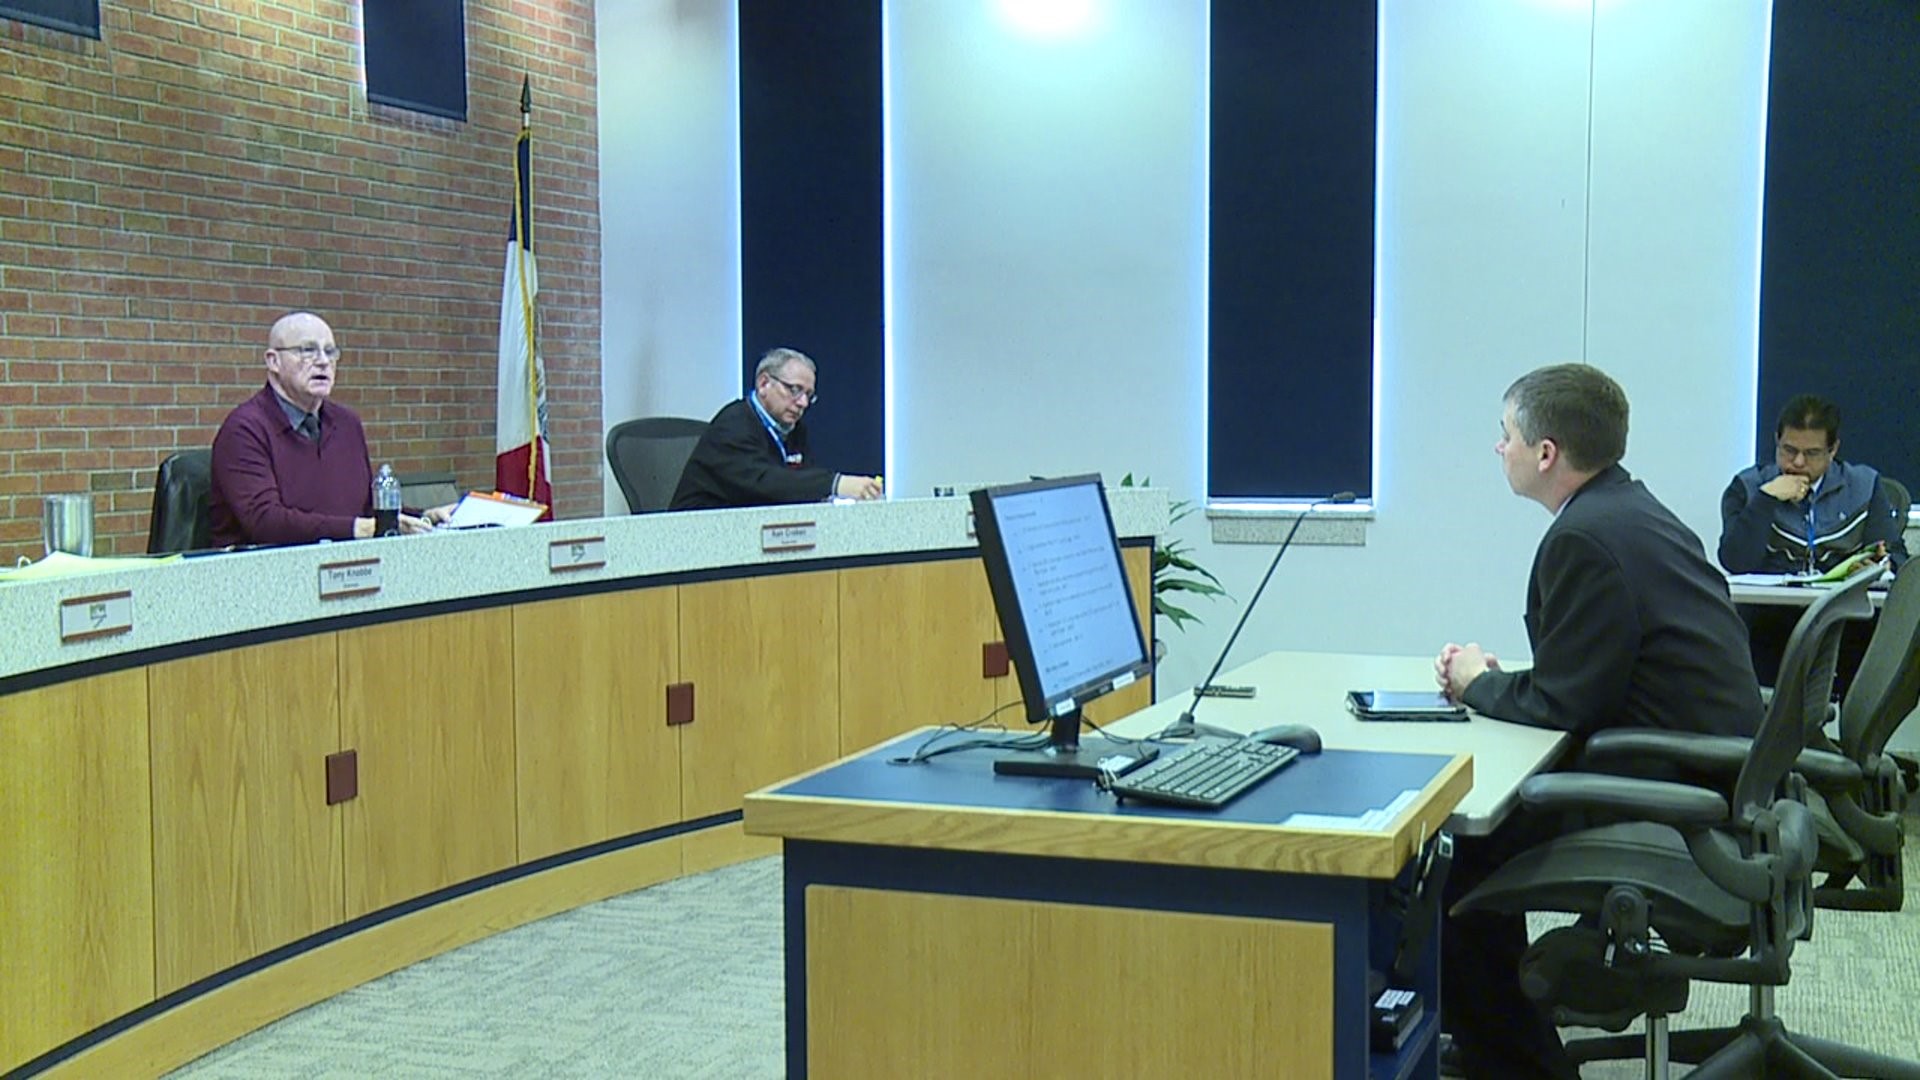 County supervisor Ken Croken wants meetings recorded